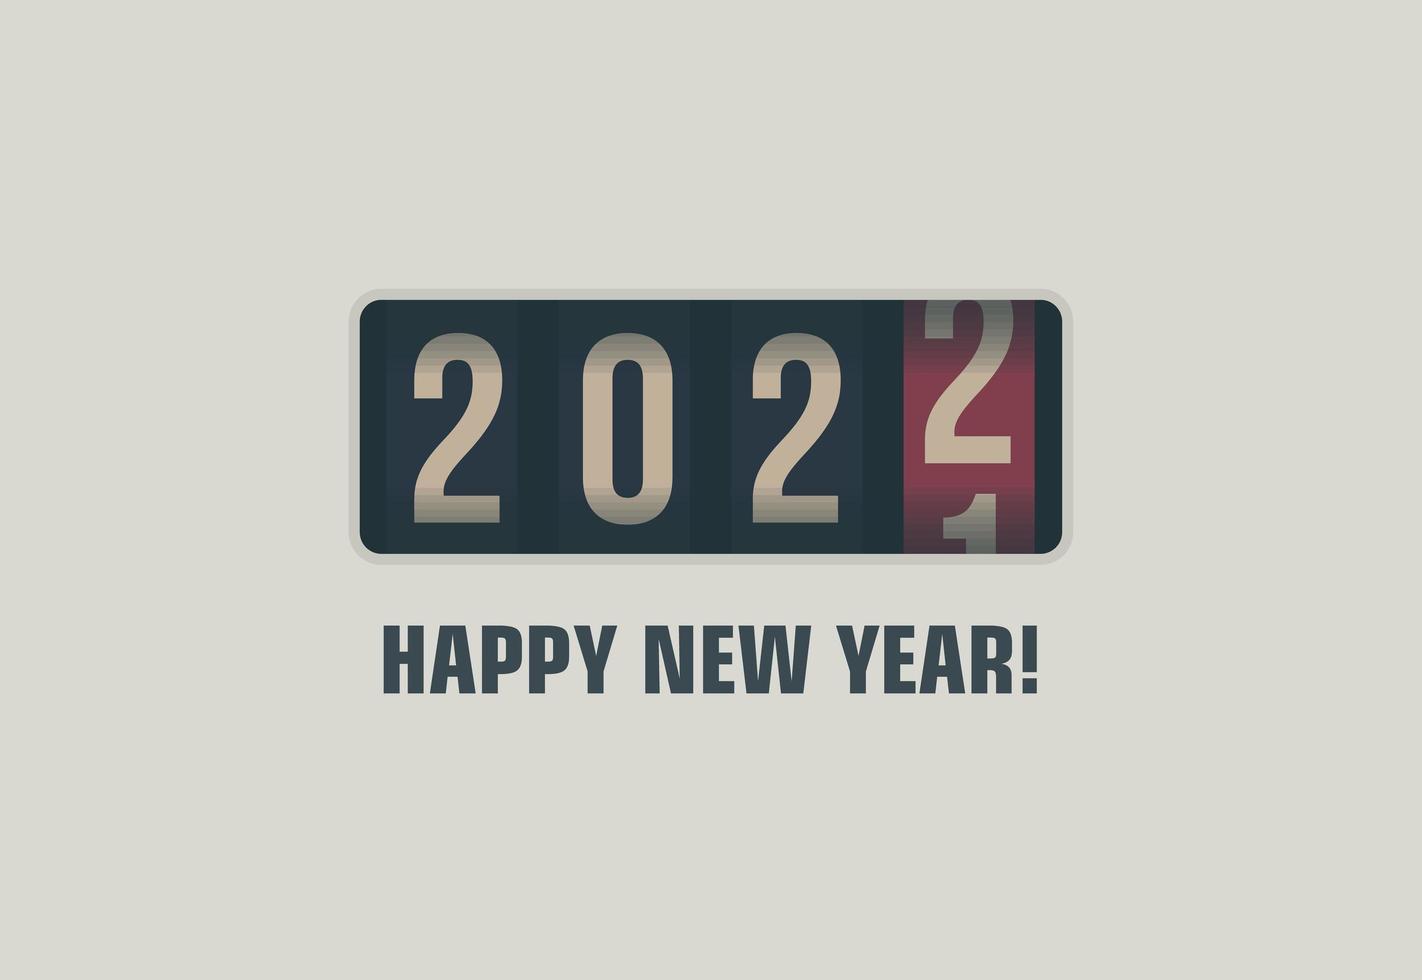 Feliz ano novo 2022, números no mostrador analógico, ilustração em vetor pôster criativo de design de estilo retro